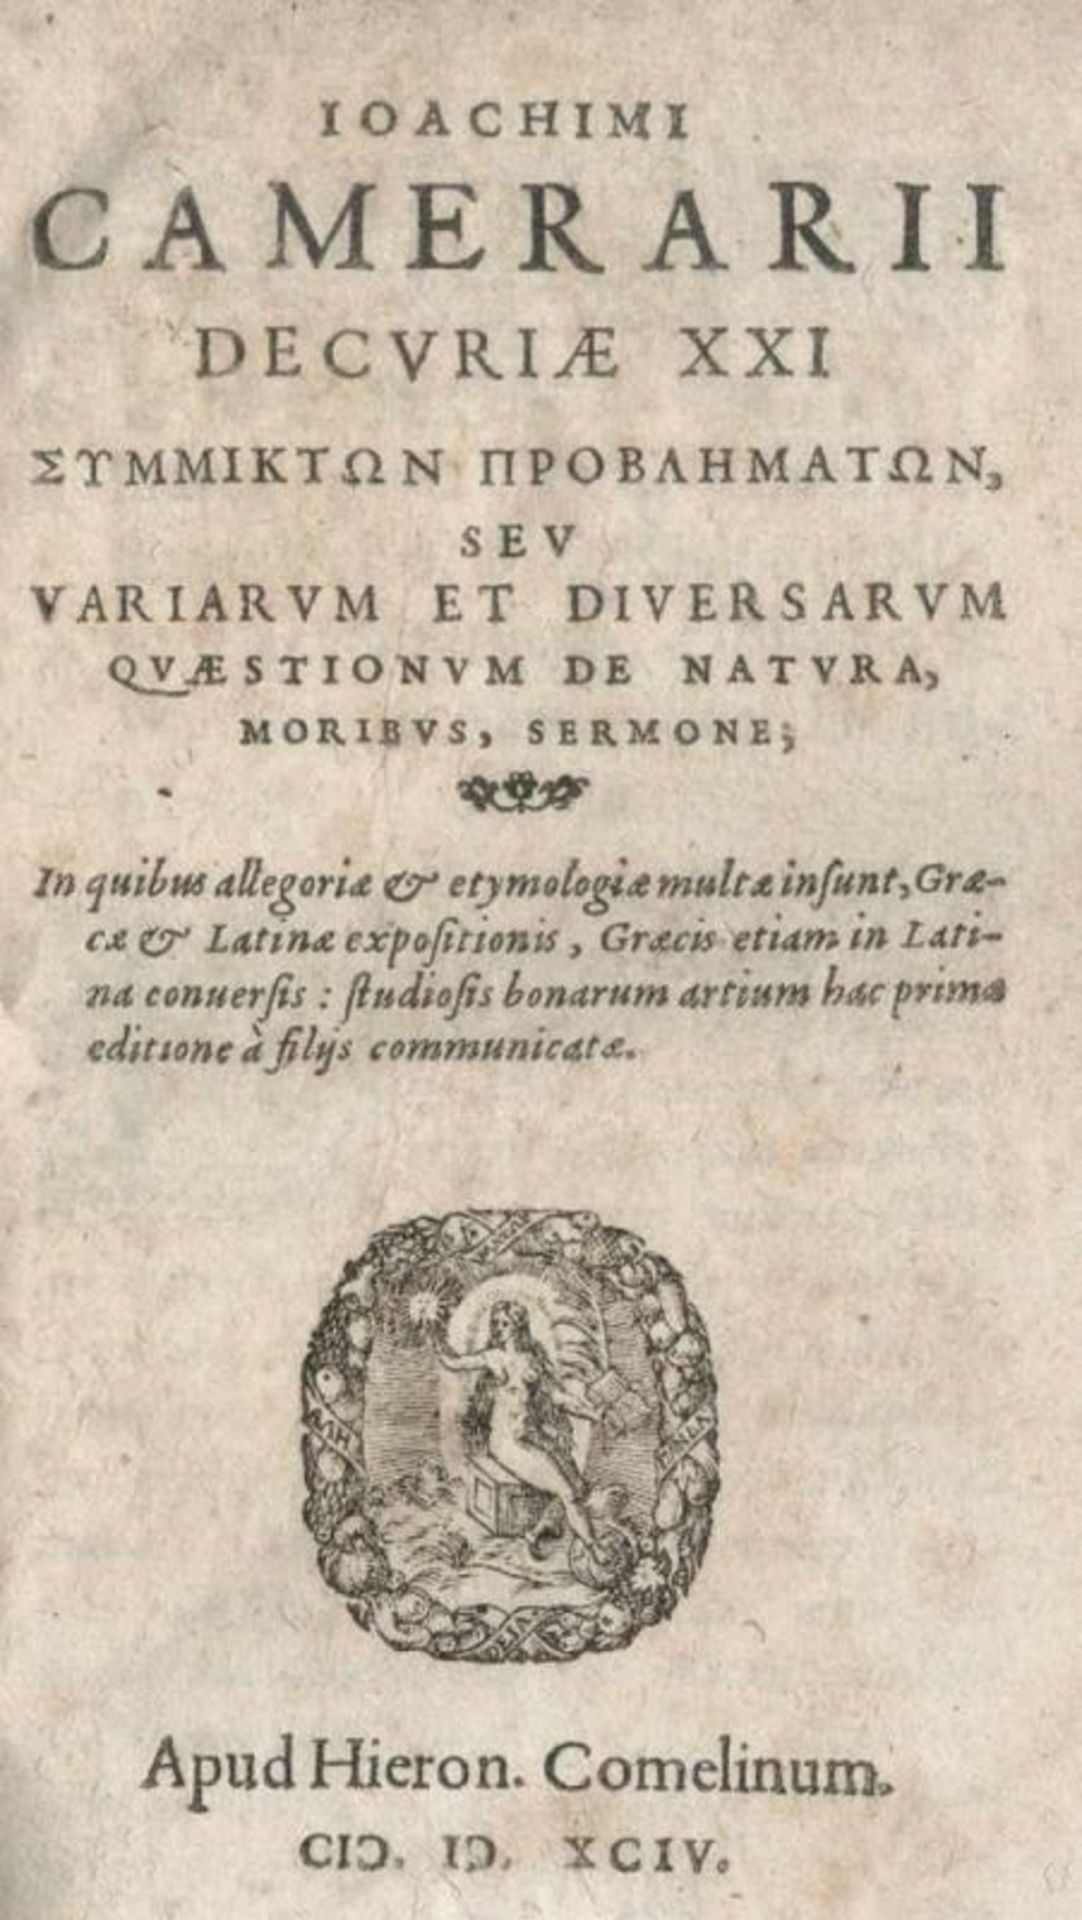 Camerarius,J.Decuriae XXI symmikton problematon, seu variarum et diversarum quaestionum de natura,